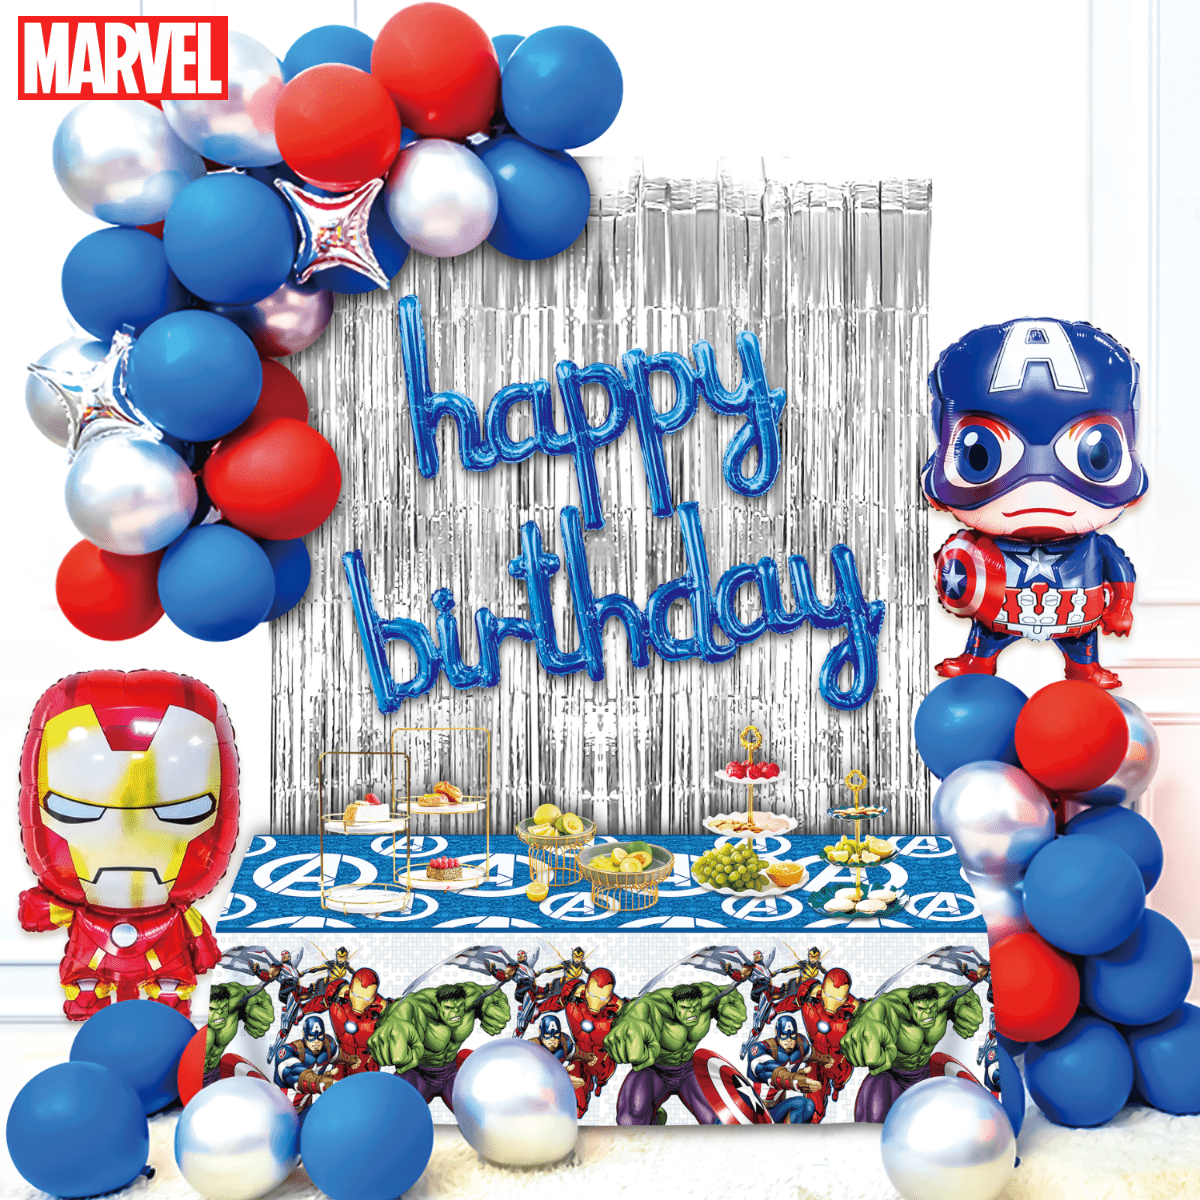 Palloncini, Avengers, Supereroi, Scudo, capitan america, Marvel,  decorazioni per interni, bouquet di palloncini, composizioni fa